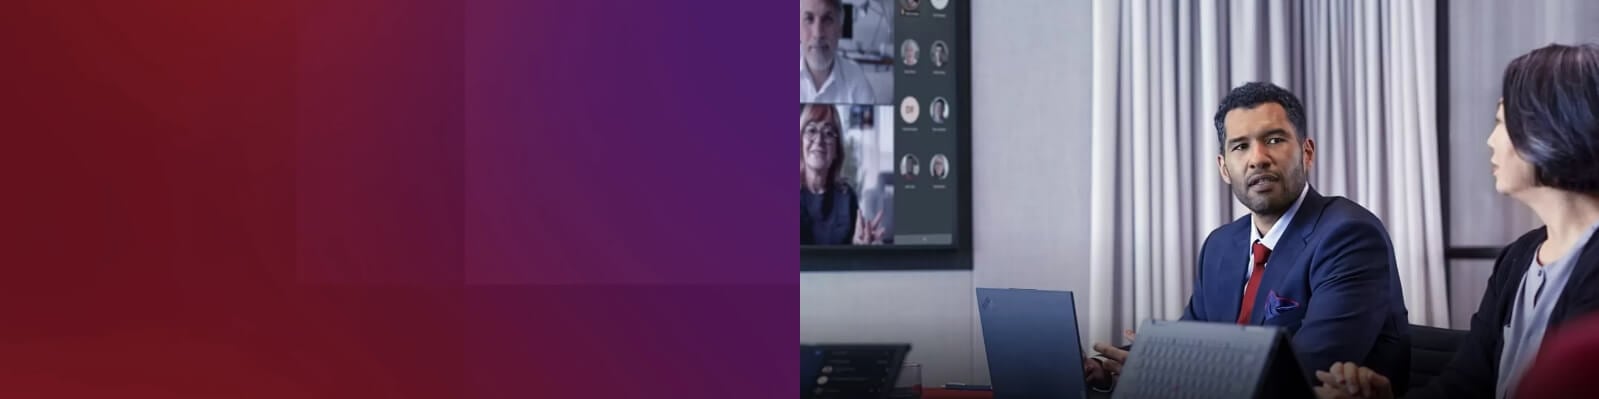 Man en vrouw in vergaderruimte met een virtuele bijeenkomst